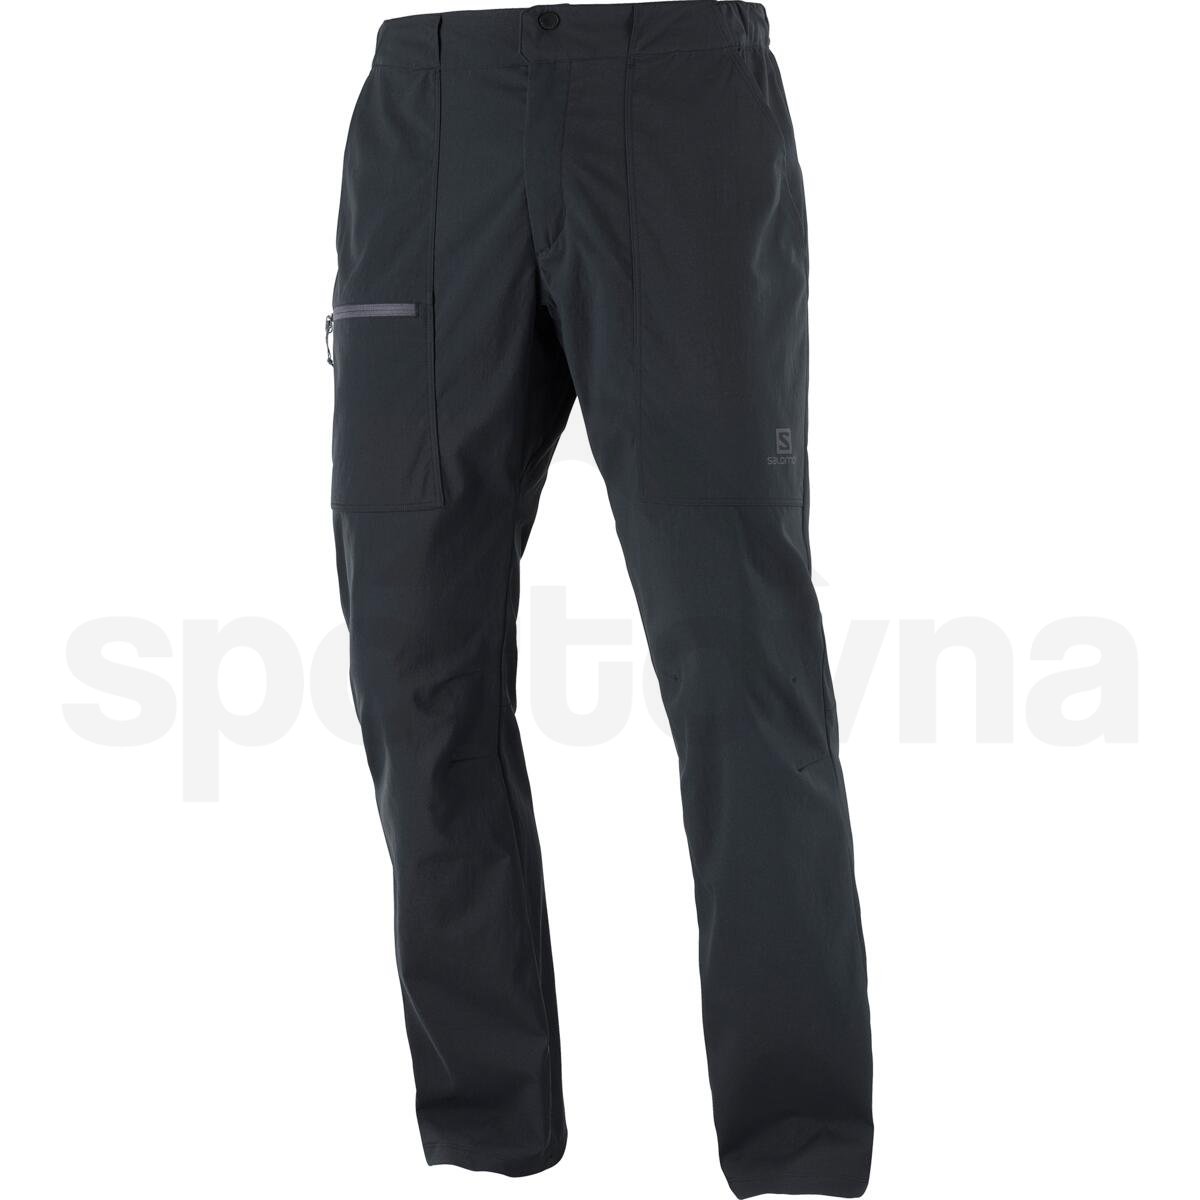 Kalhoty Salomon OUTRACK PANTS M - černá (prodloužená délka)